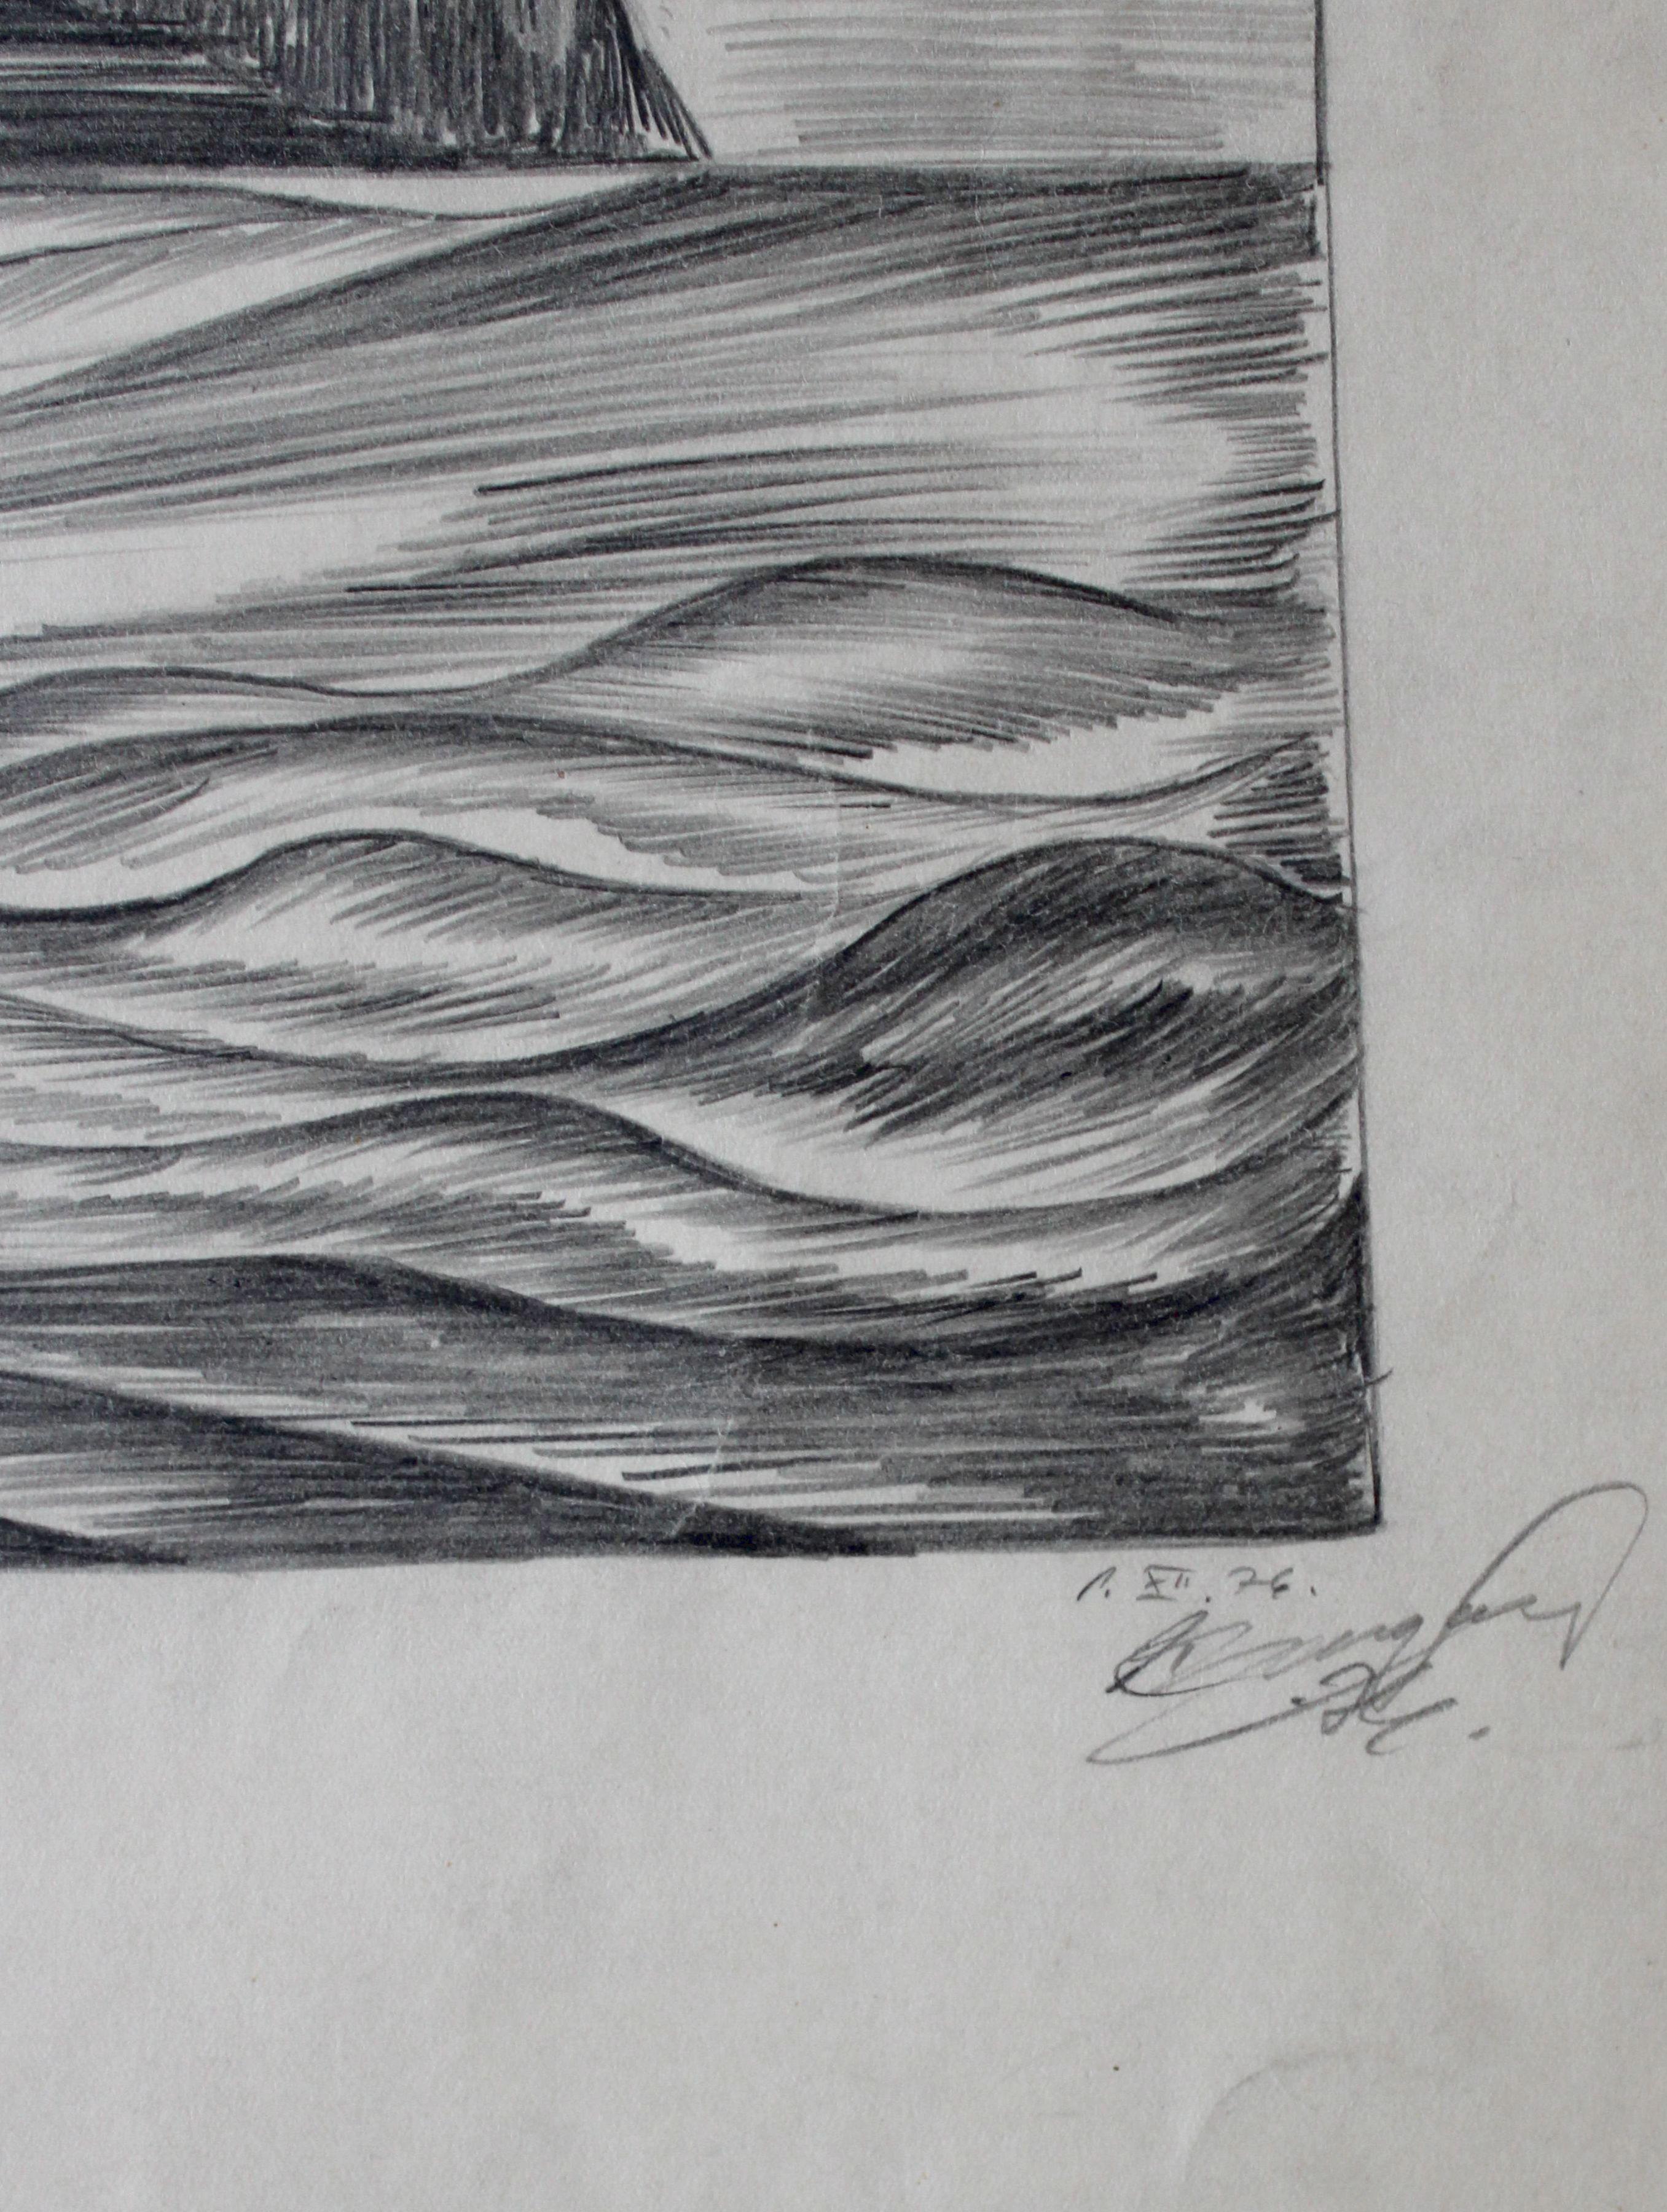 Swallows by the water. 1976, Papier, Bleistift, 45. 5 x 40. 5 cm (Moderne), Art, von Dzidra Ezergaile